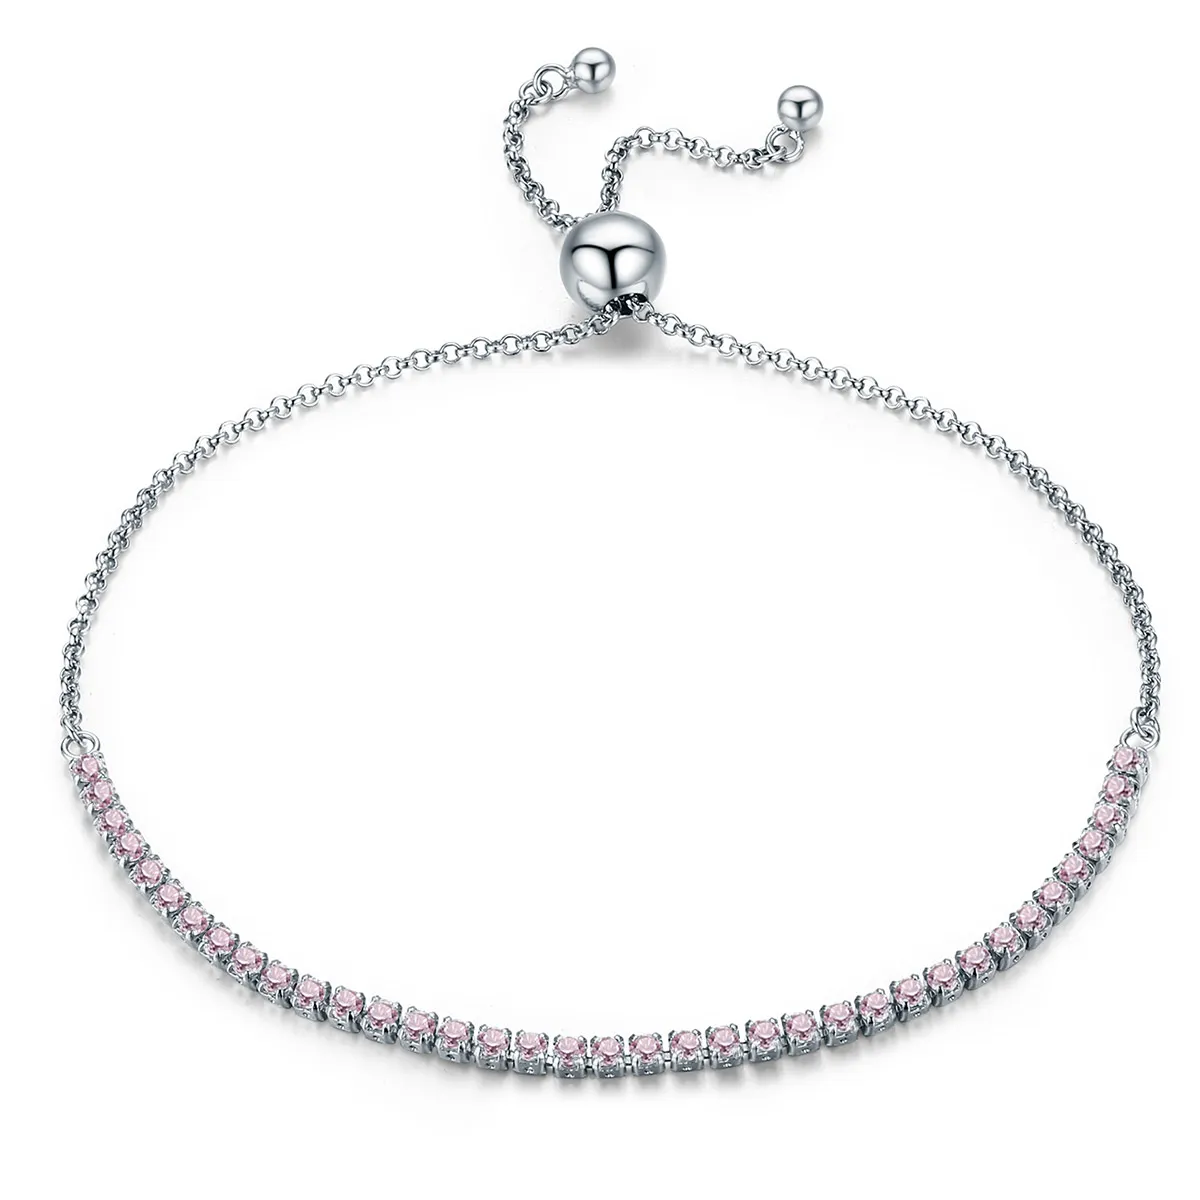 Pandora Style Silver Elegant Accompany Slider Tennis Bracelet - SCB045